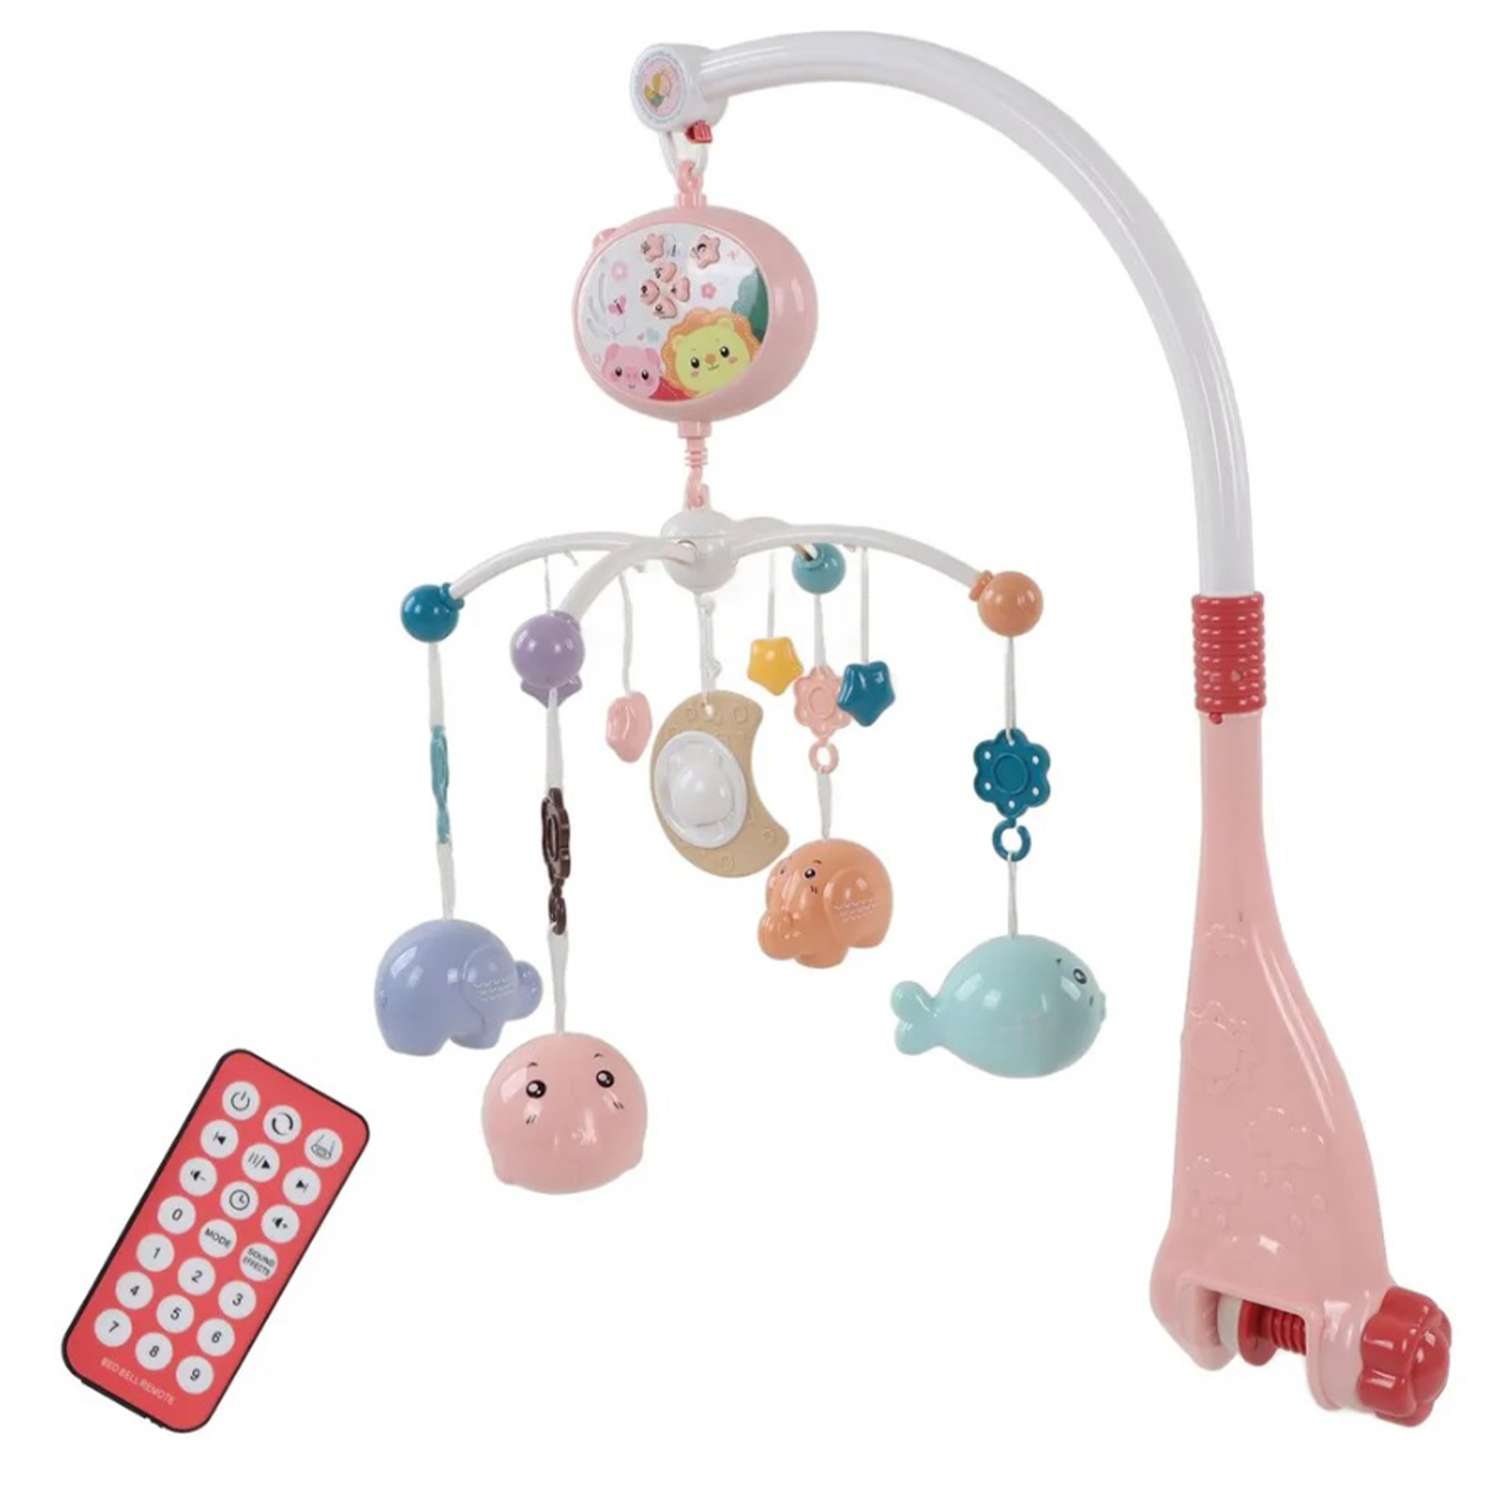 Мобиль розовый рыбки и слоник ТОТОША с пультом и проектором каруселька детская в кроватку для новорожденных - фото 5